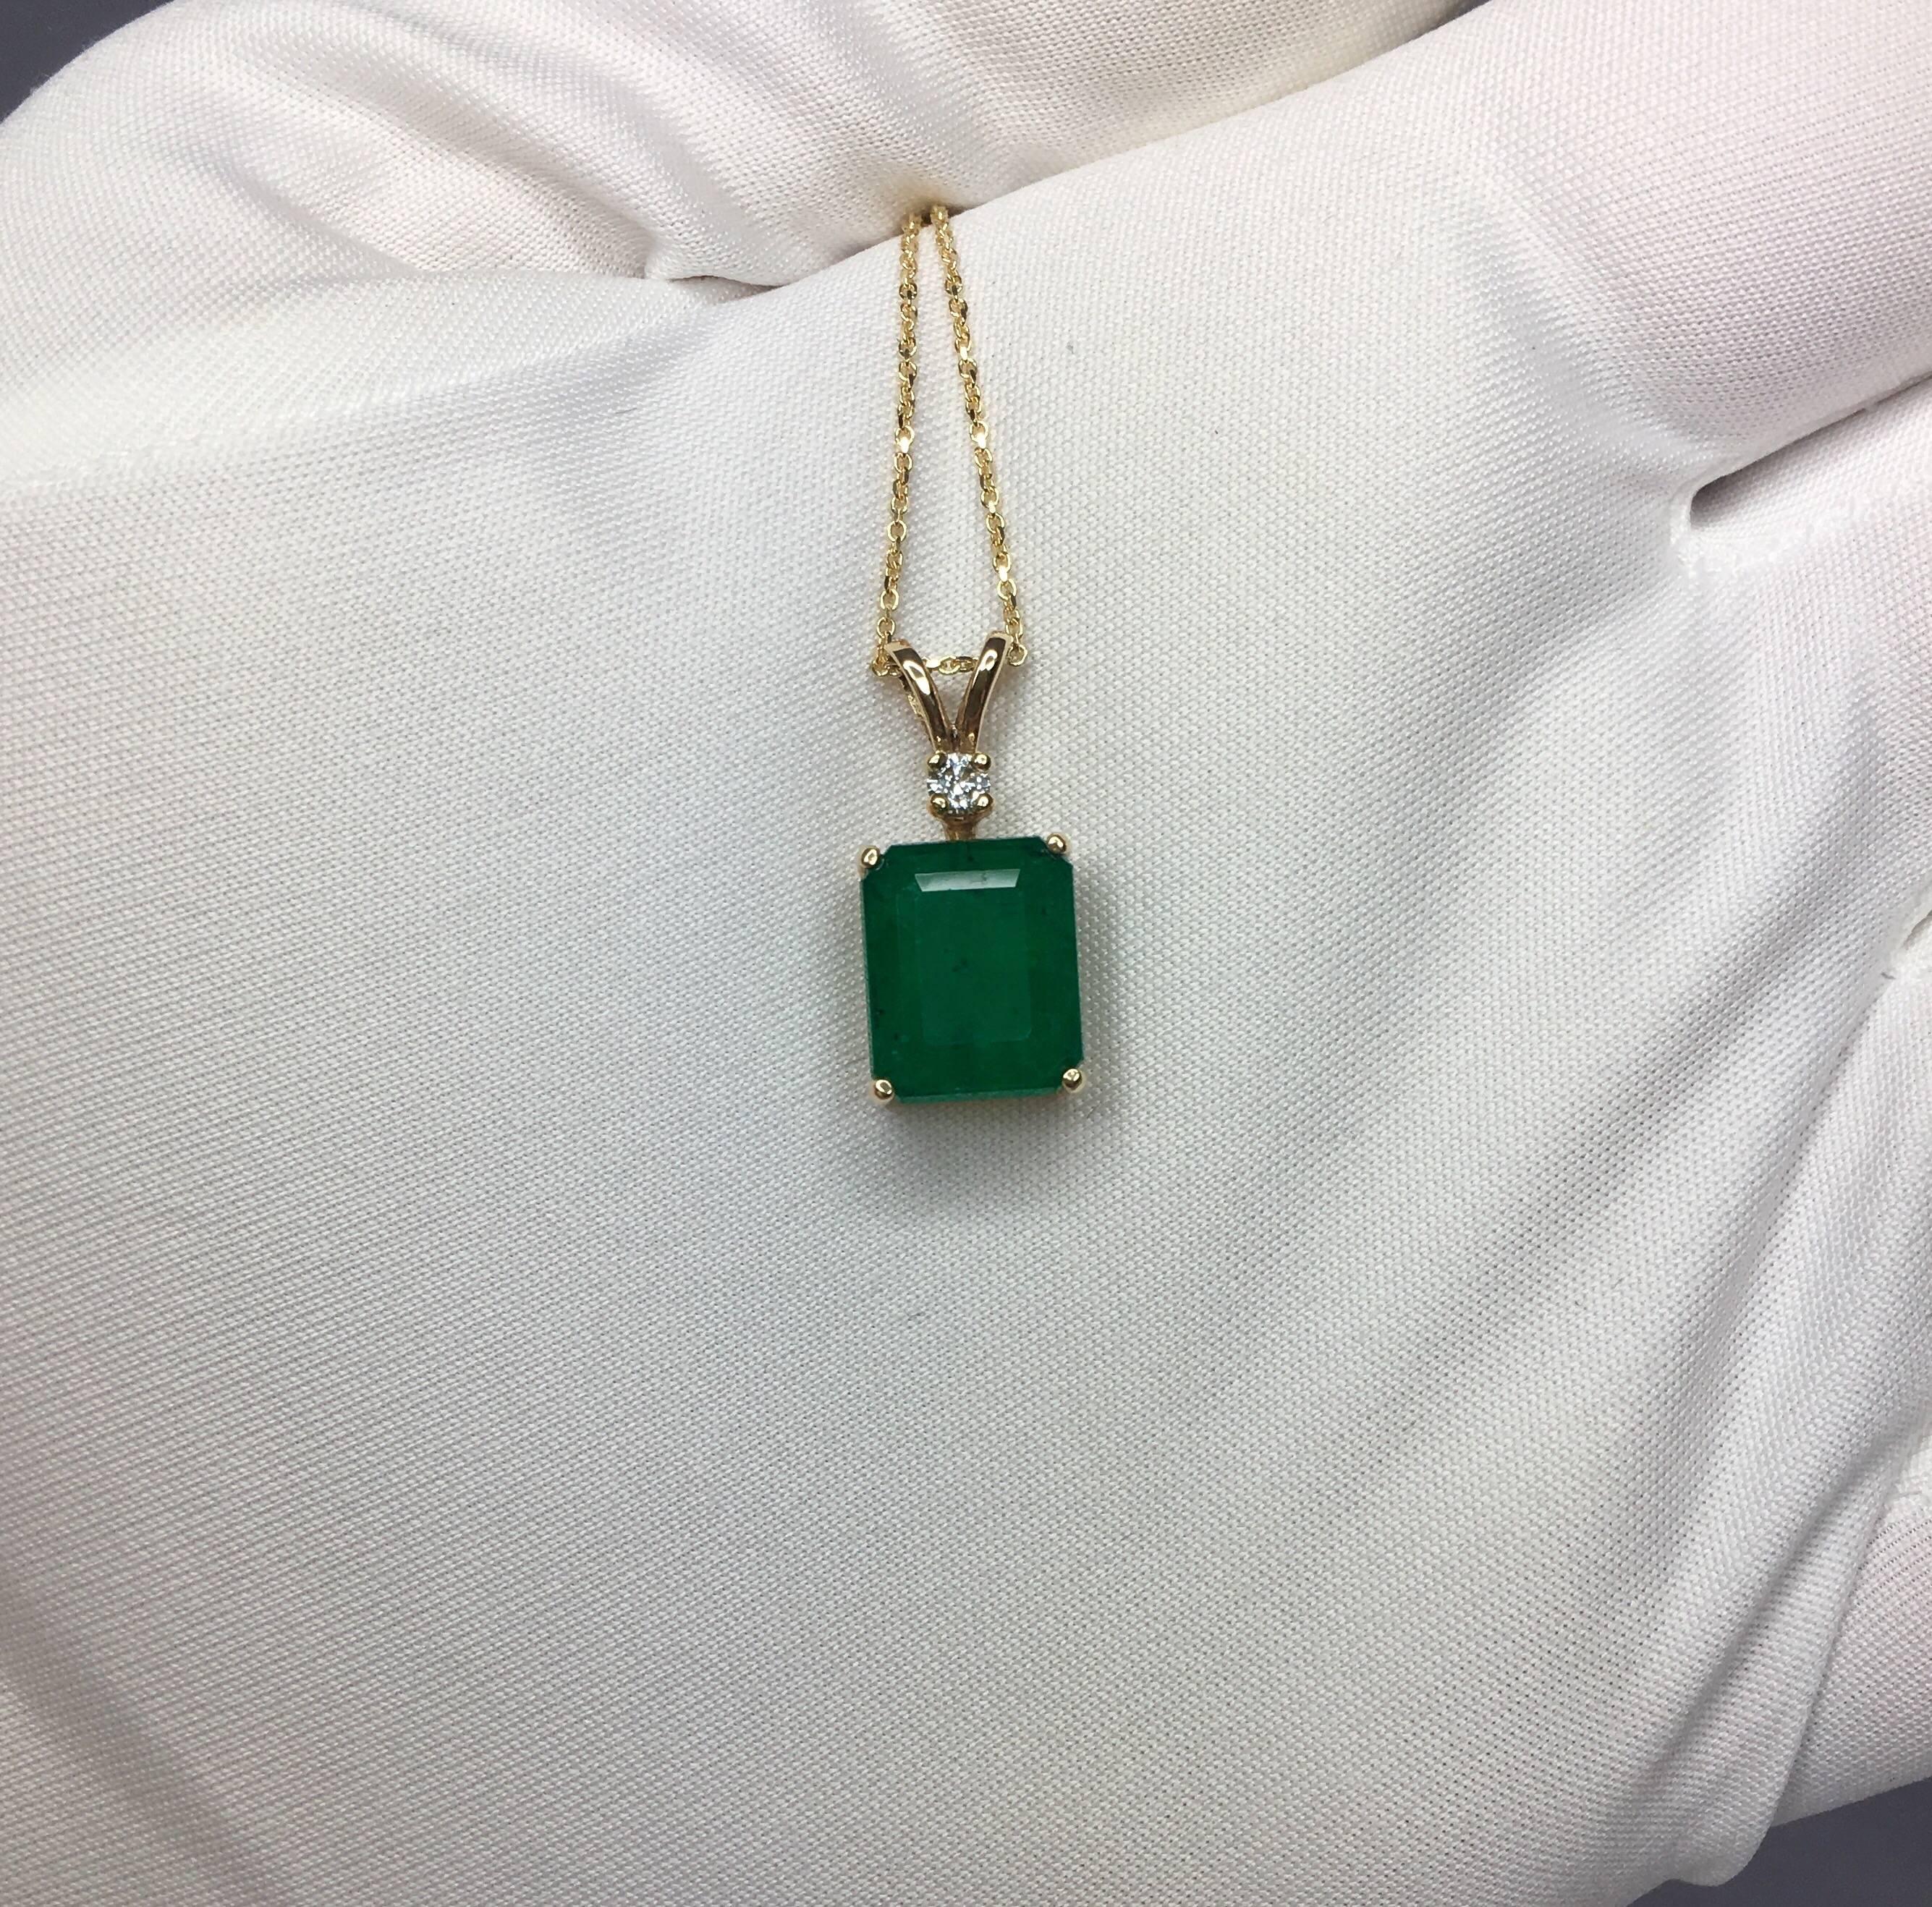 IGI Certified 4.51 Carat Zambian Emerald and Diamond 14 Karat Gold Pendant 1